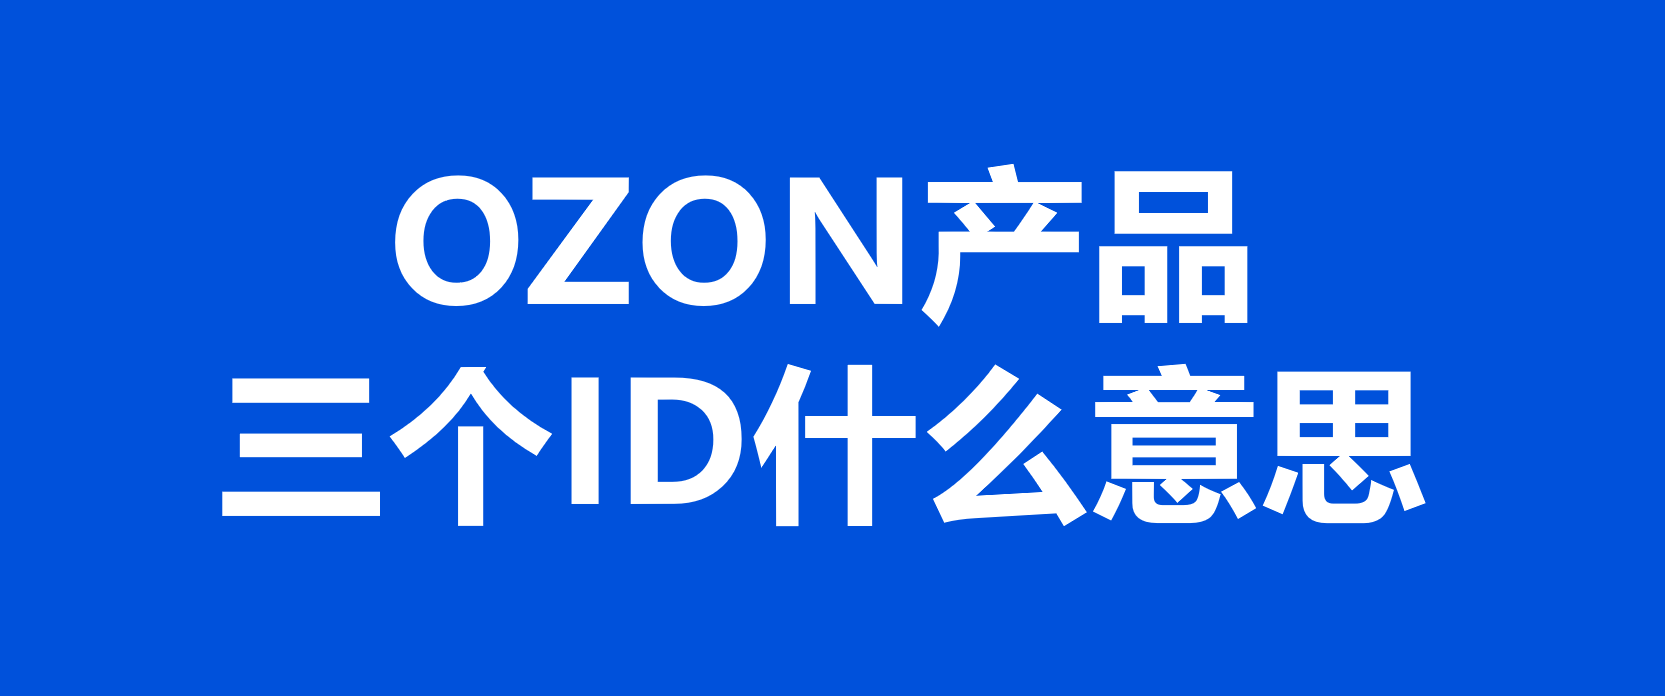 【干货分享】关于OZON产品三个ID的解释